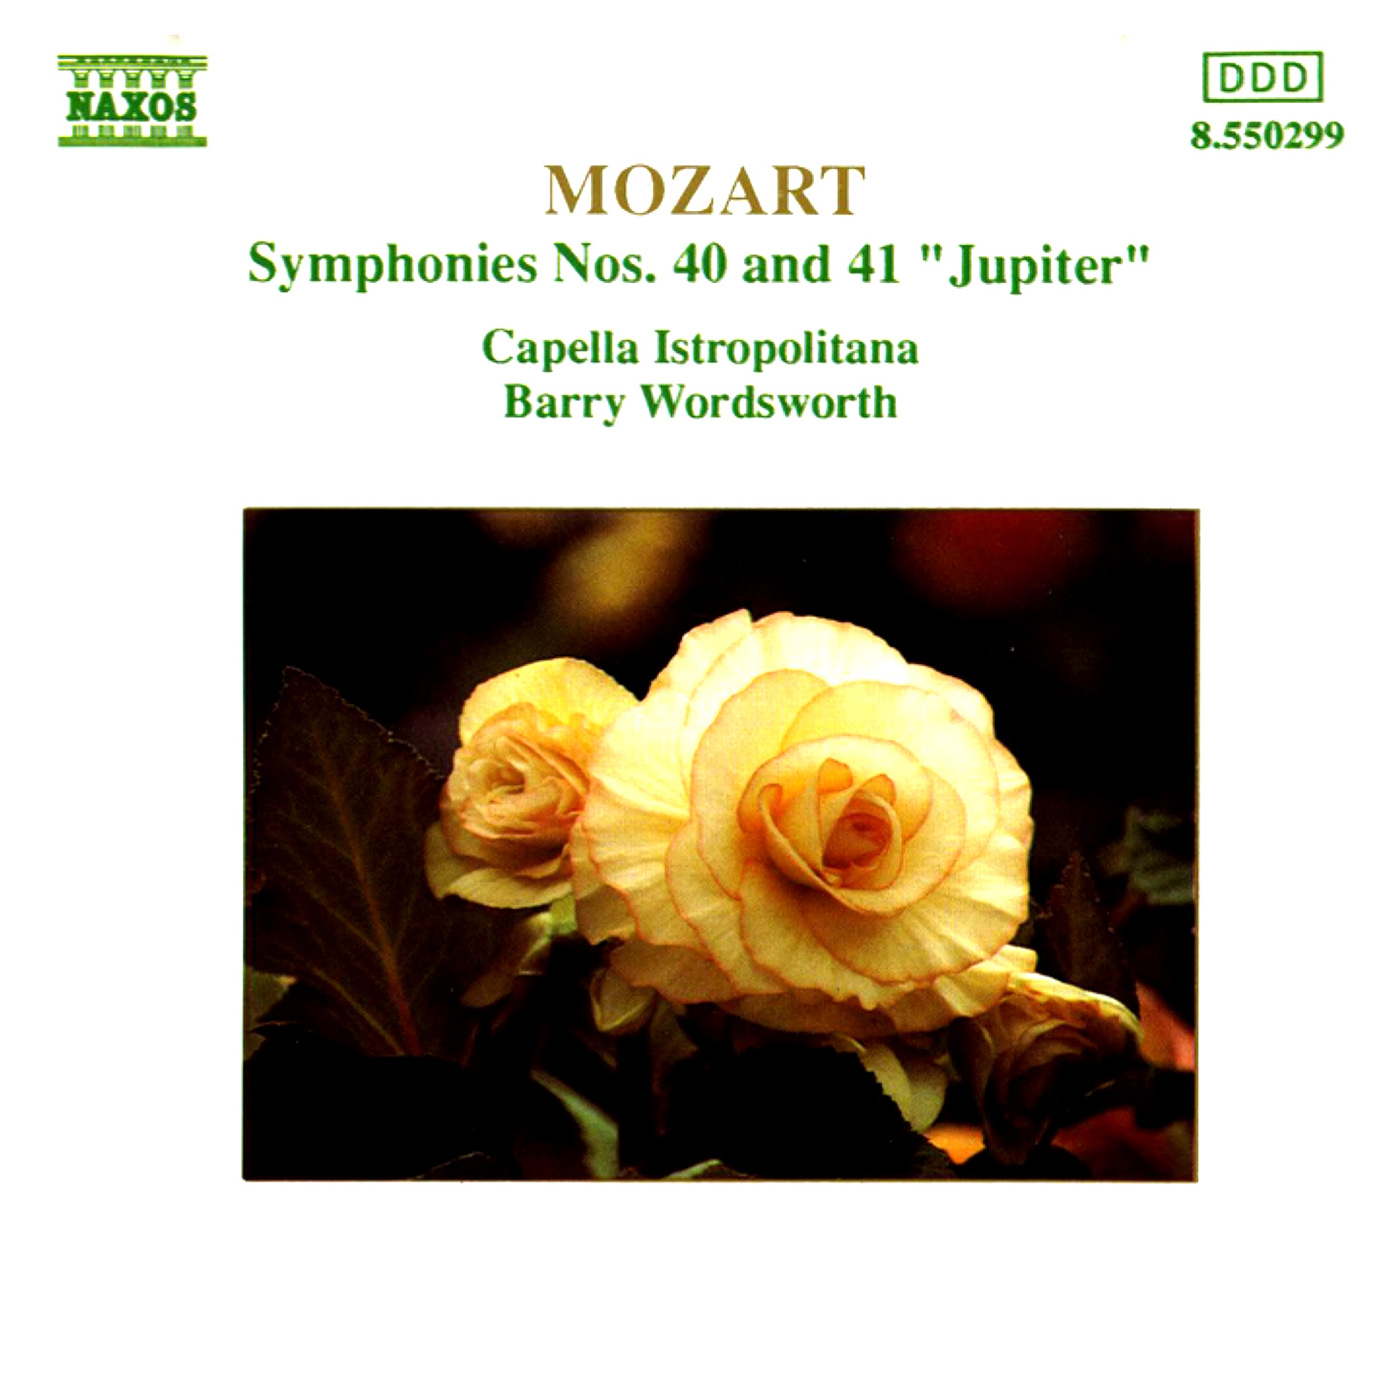 Symphony No. 41 in C Major, K. 551, "Jupiter": IV. Molto allegro